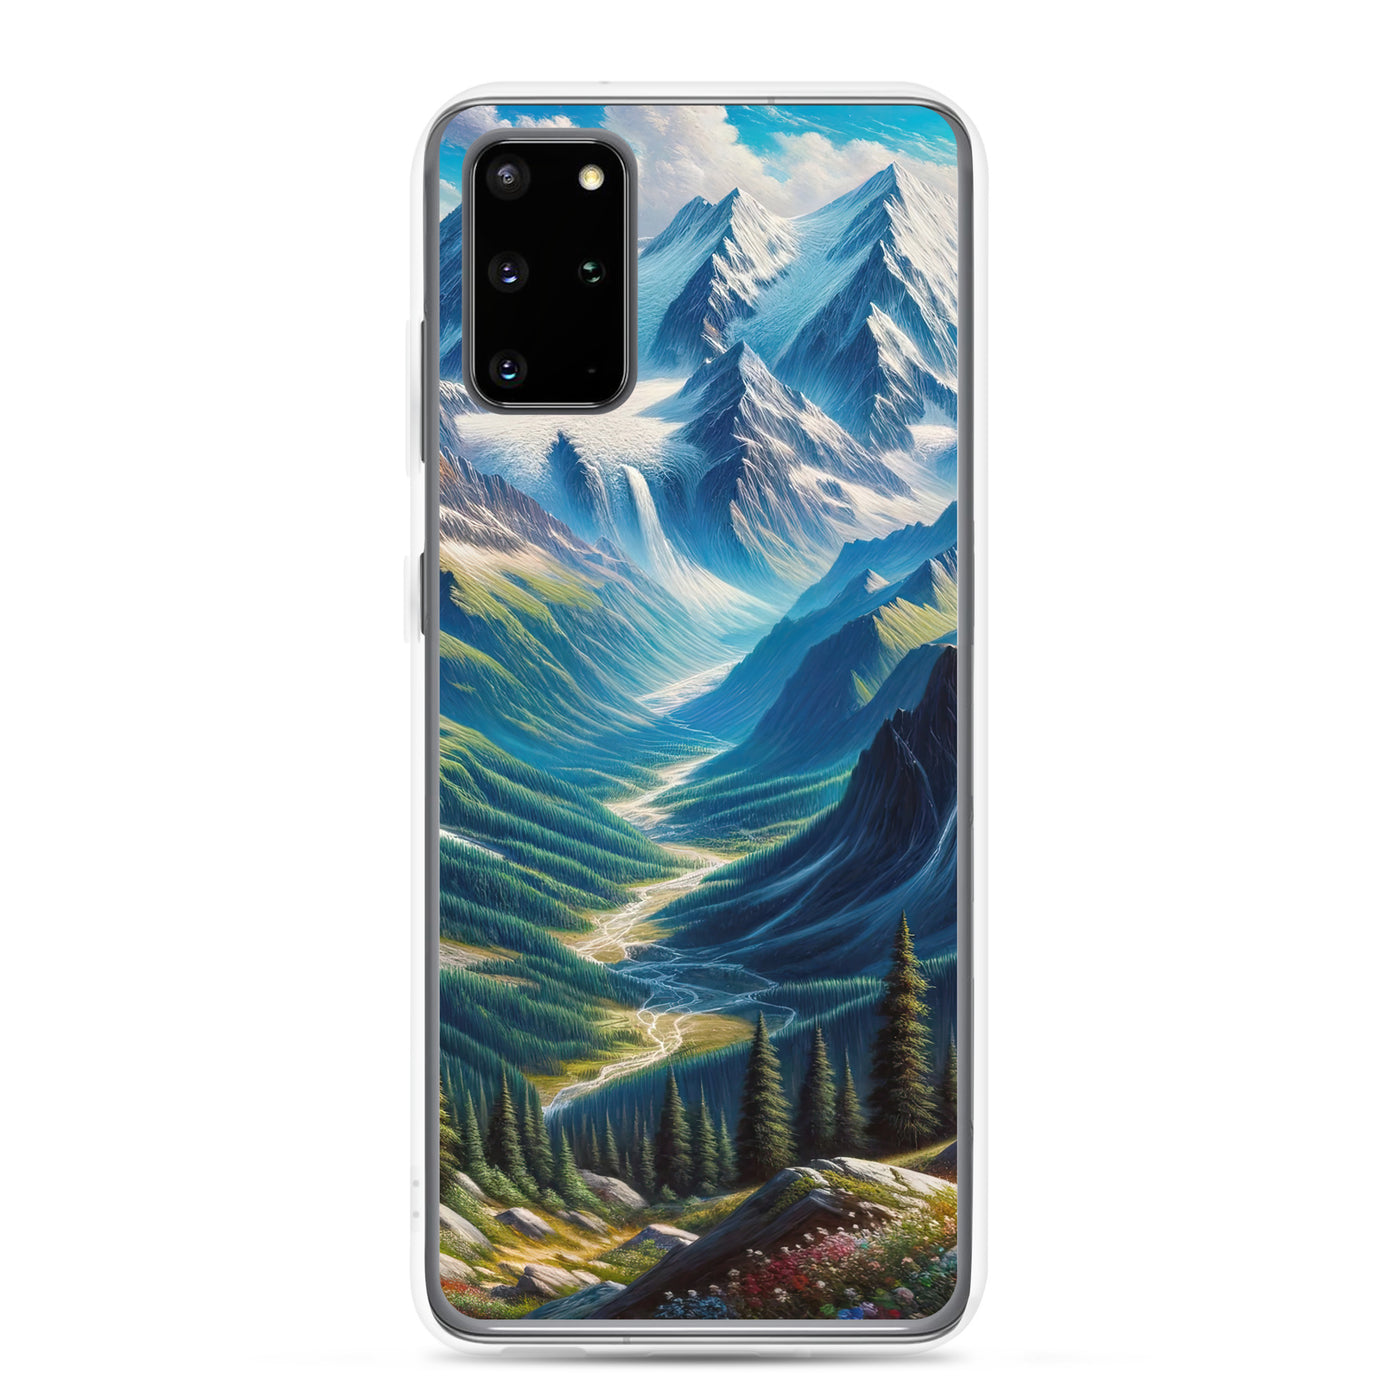 Panorama-Ölgemälde der Alpen mit schneebedeckten Gipfeln und schlängelnden Flusstälern - Samsung Schutzhülle (durchsichtig) berge xxx yyy zzz Samsung Galaxy S20 Plus